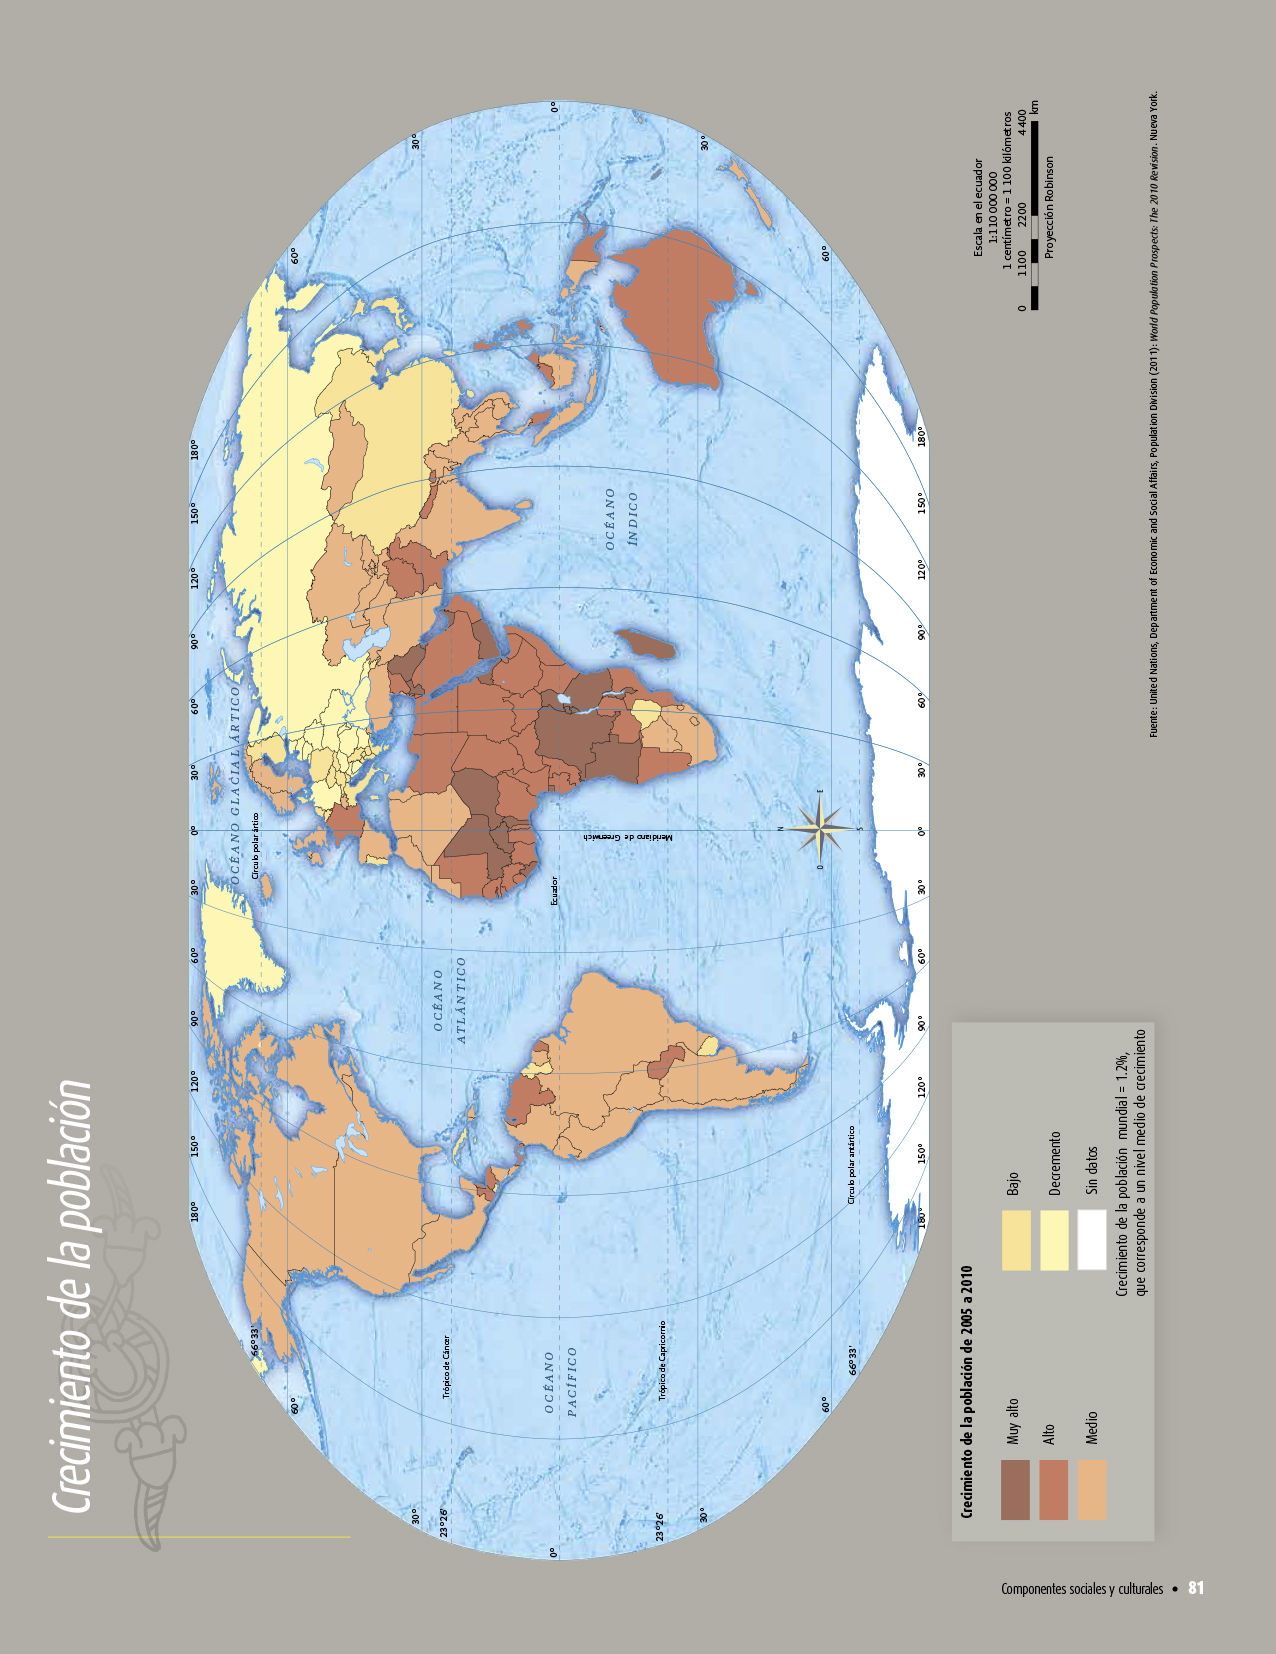 Atlas de geografía del mundo quinto grado 2017-2018 - Página 81 - Libros de Texto Online